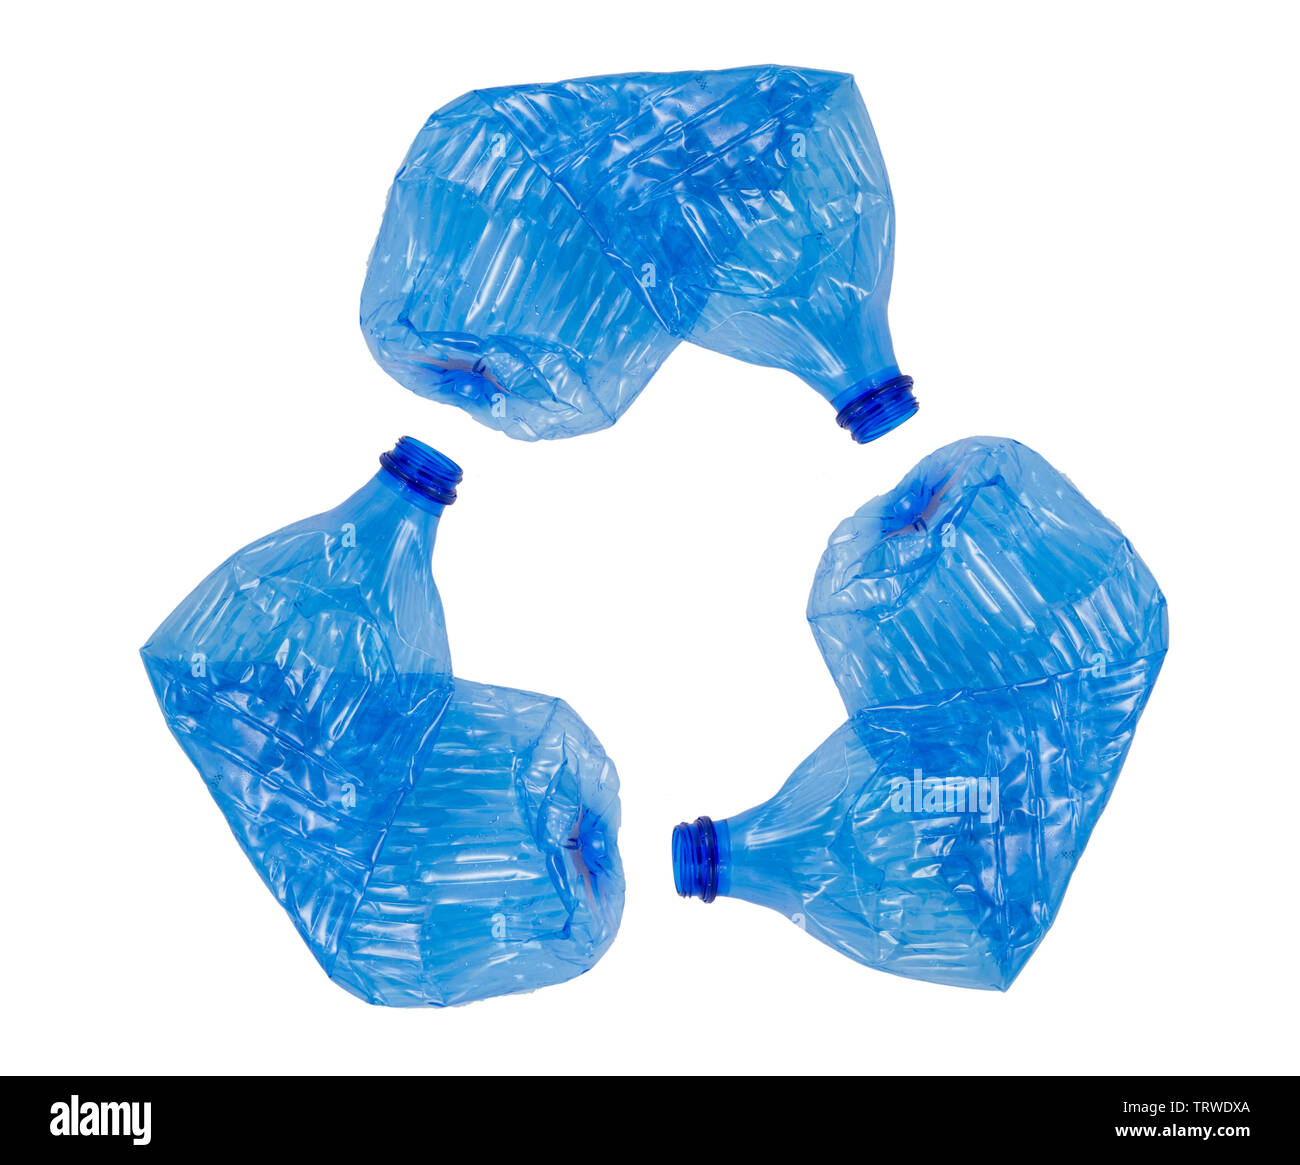 Les bouteilles en plastique dans un concept symbole de recyclage Banque D'Images